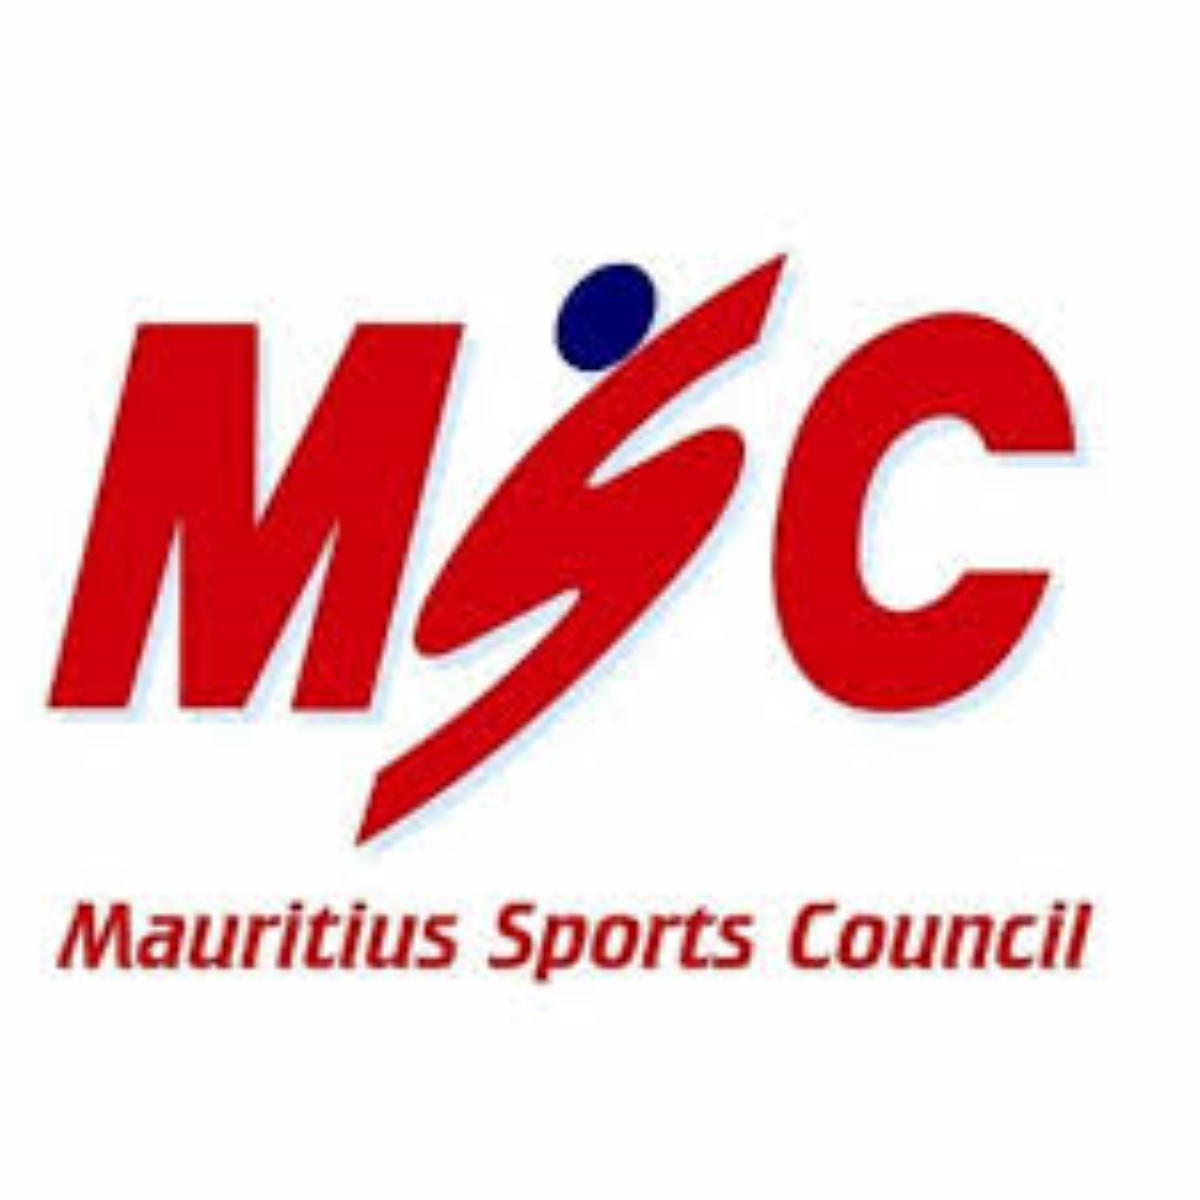 Le secrétaire général du Mauritius Sports Council, Zameer Janoo accusé d'harcèlement sexuel